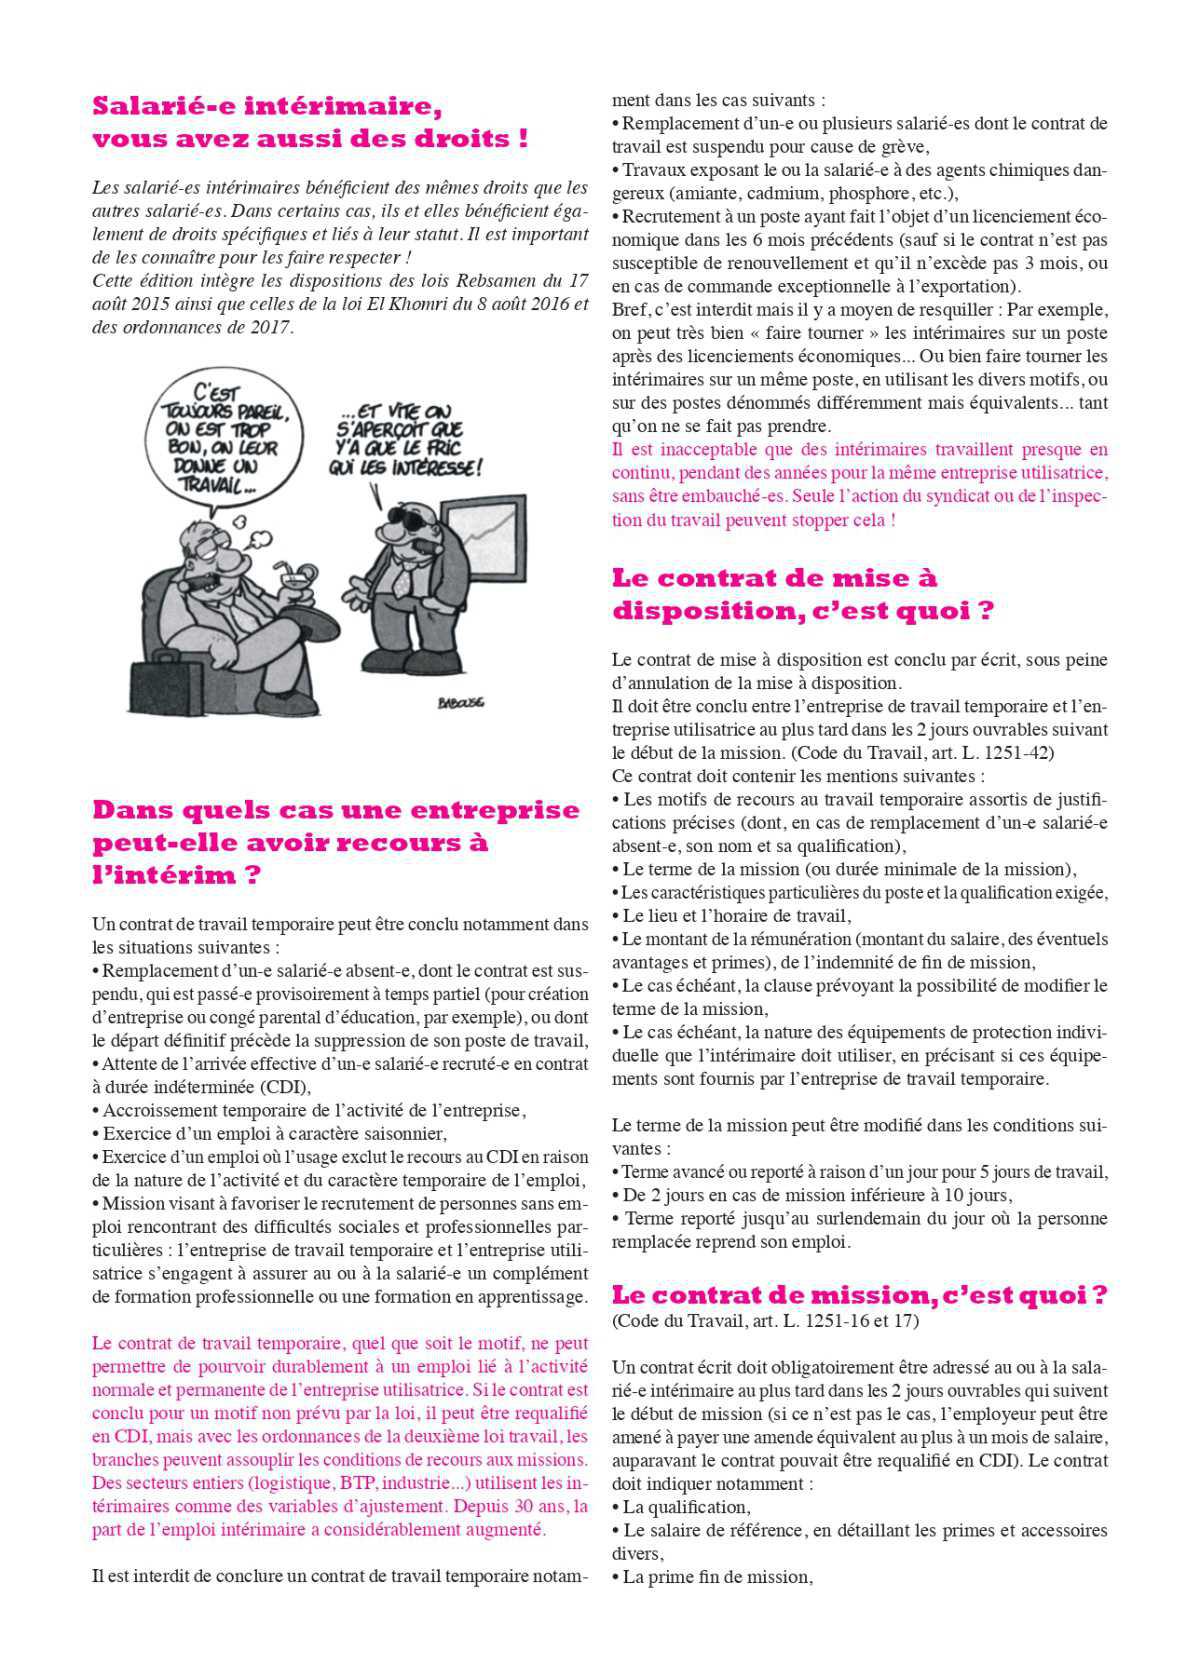 Brochure // Les droits des salariés intérimaires en 28 questions